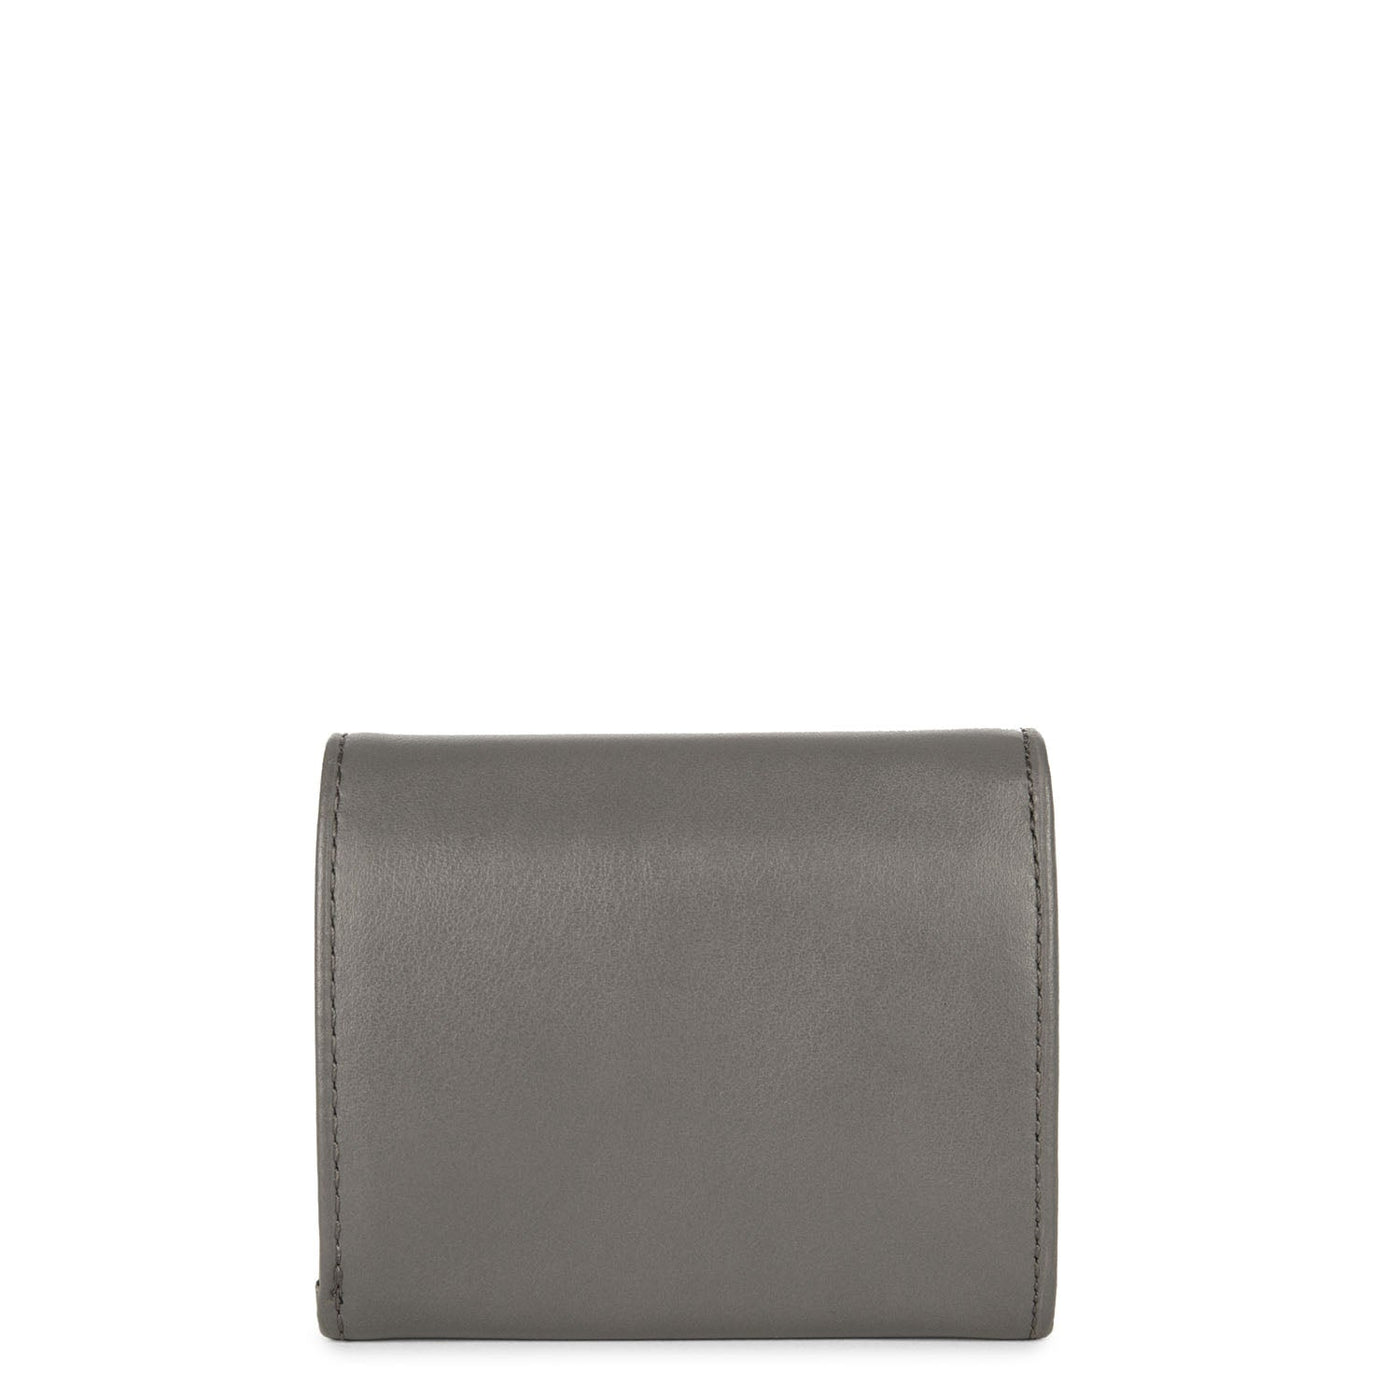 coin purse - capital #couleur_gris